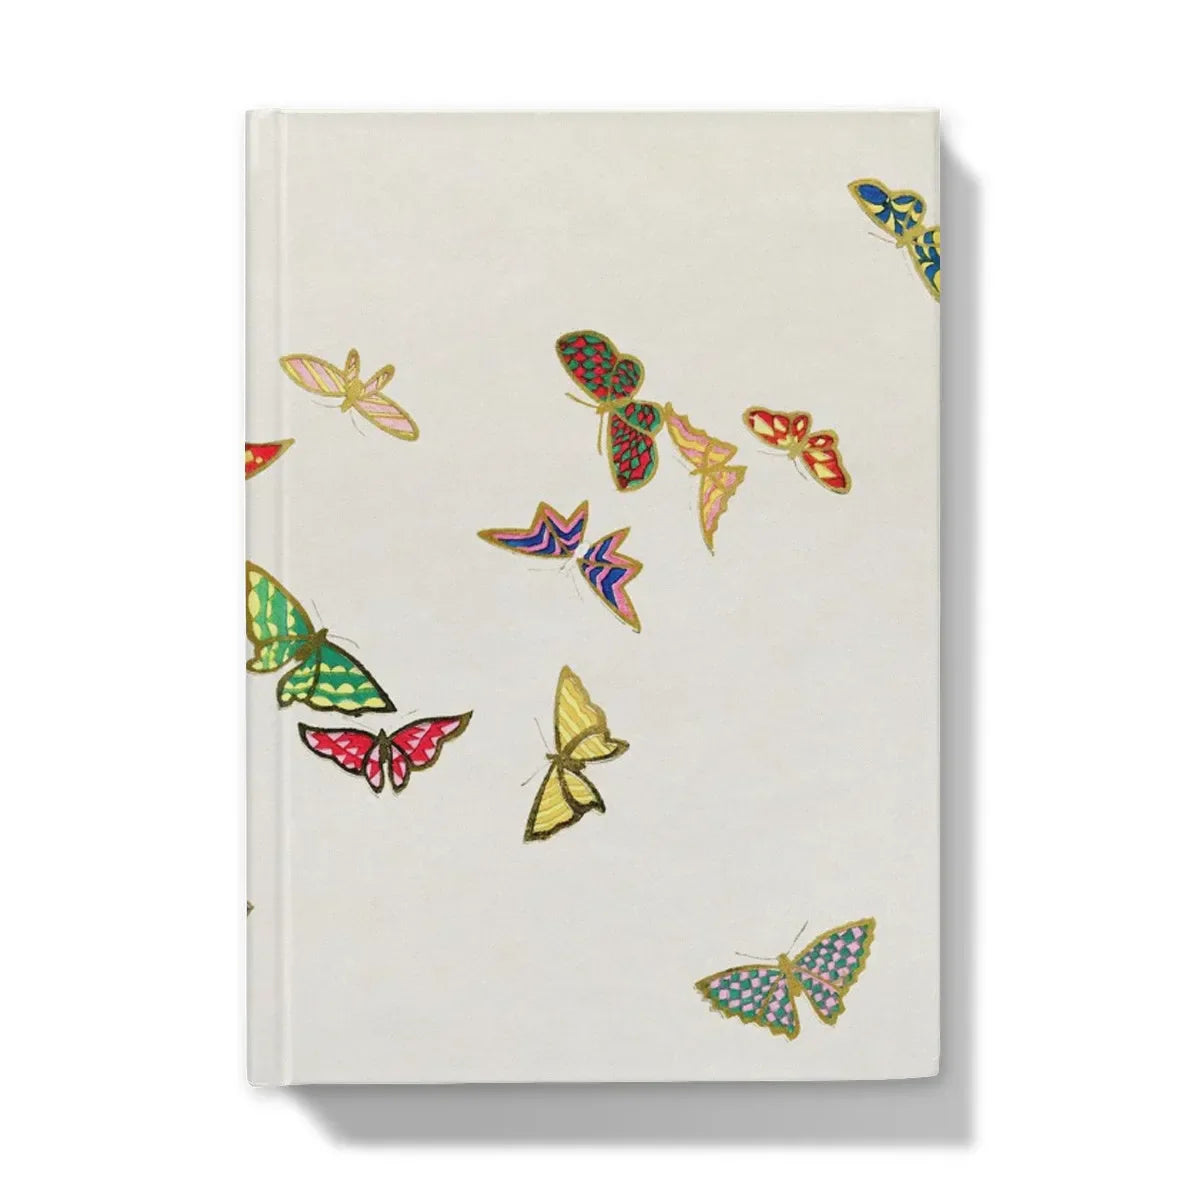 Rainbow Butterflies - Kamisaka Sekka Chō Senshu Art Journal - 5’x7’ / Lined - Notebooks & Notepads - Aesthetic Art